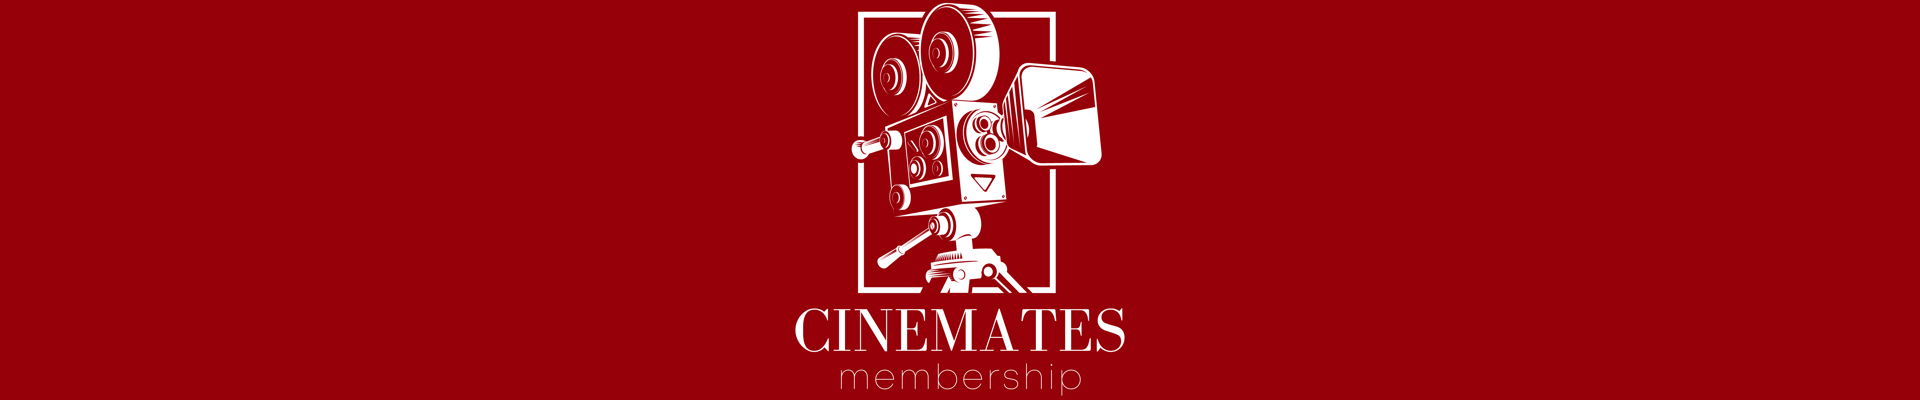 Cinemates Membership